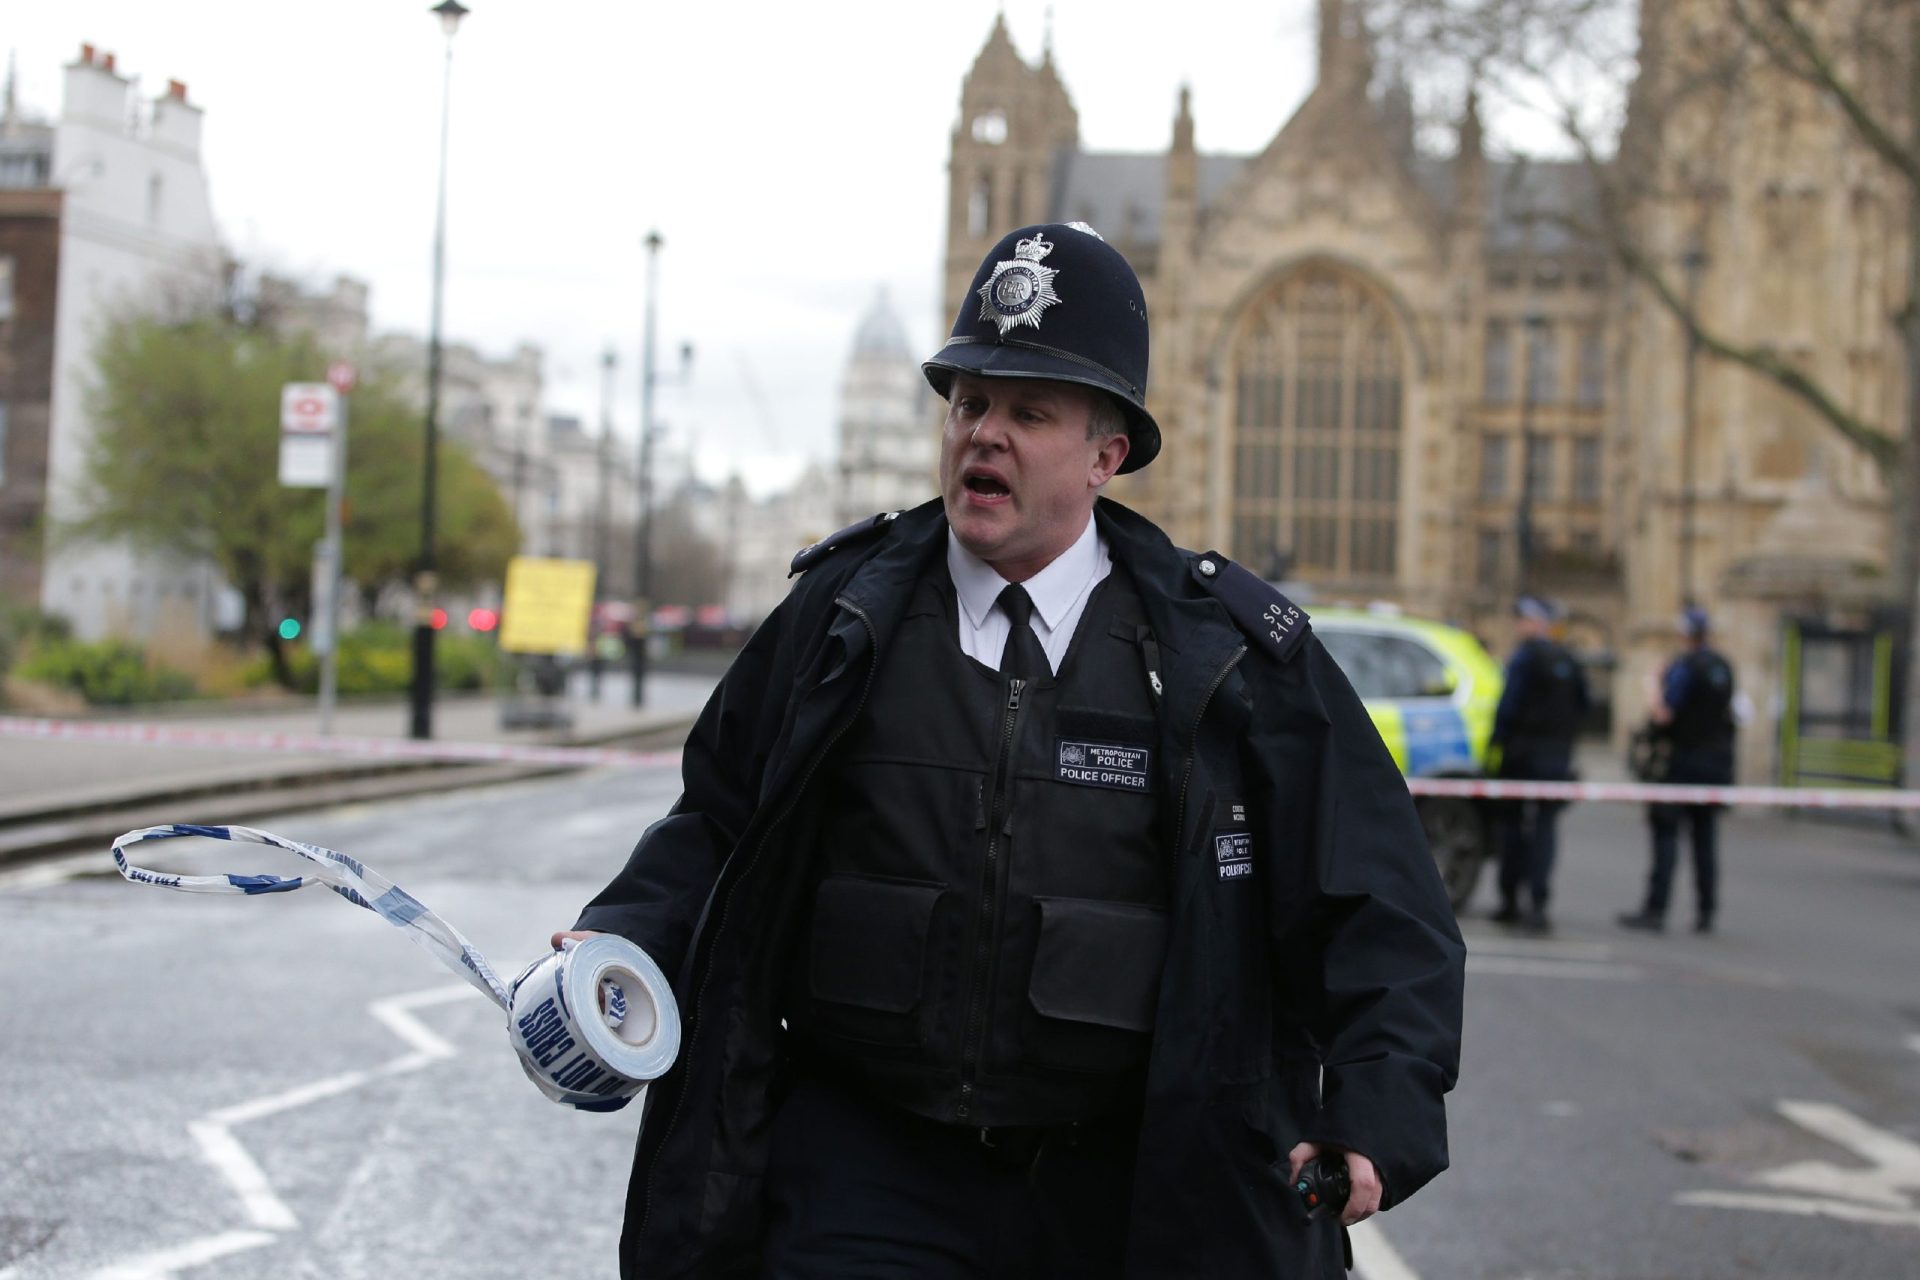 Verdades e boatos do ataque em Londres: o deputado corajoso e o suspeito que afinal está preso